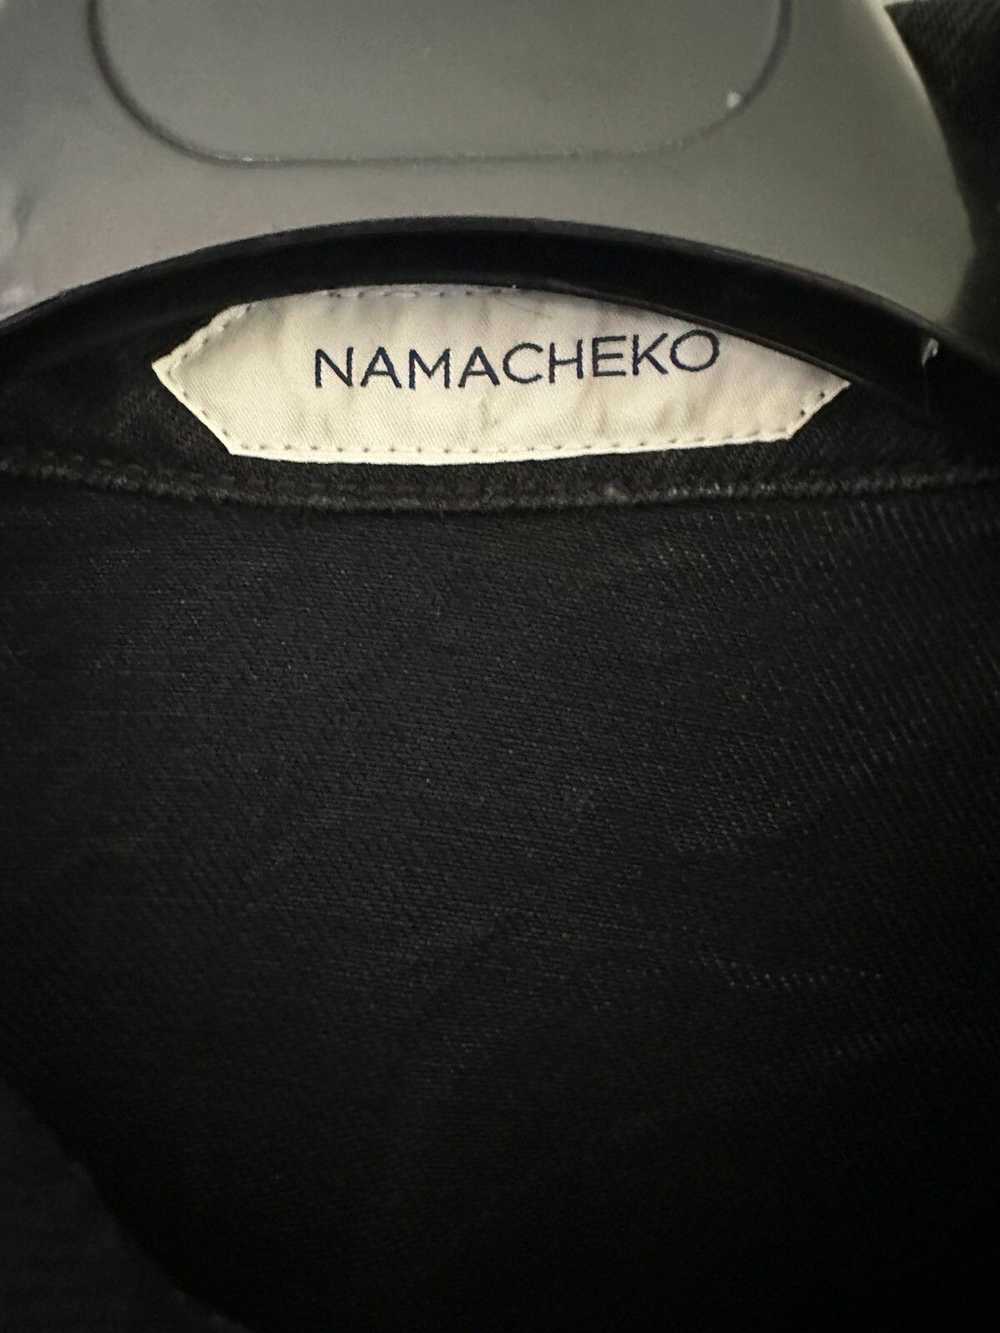 Namacheko Namacheko Eveh Shirt Black Wash - image 3